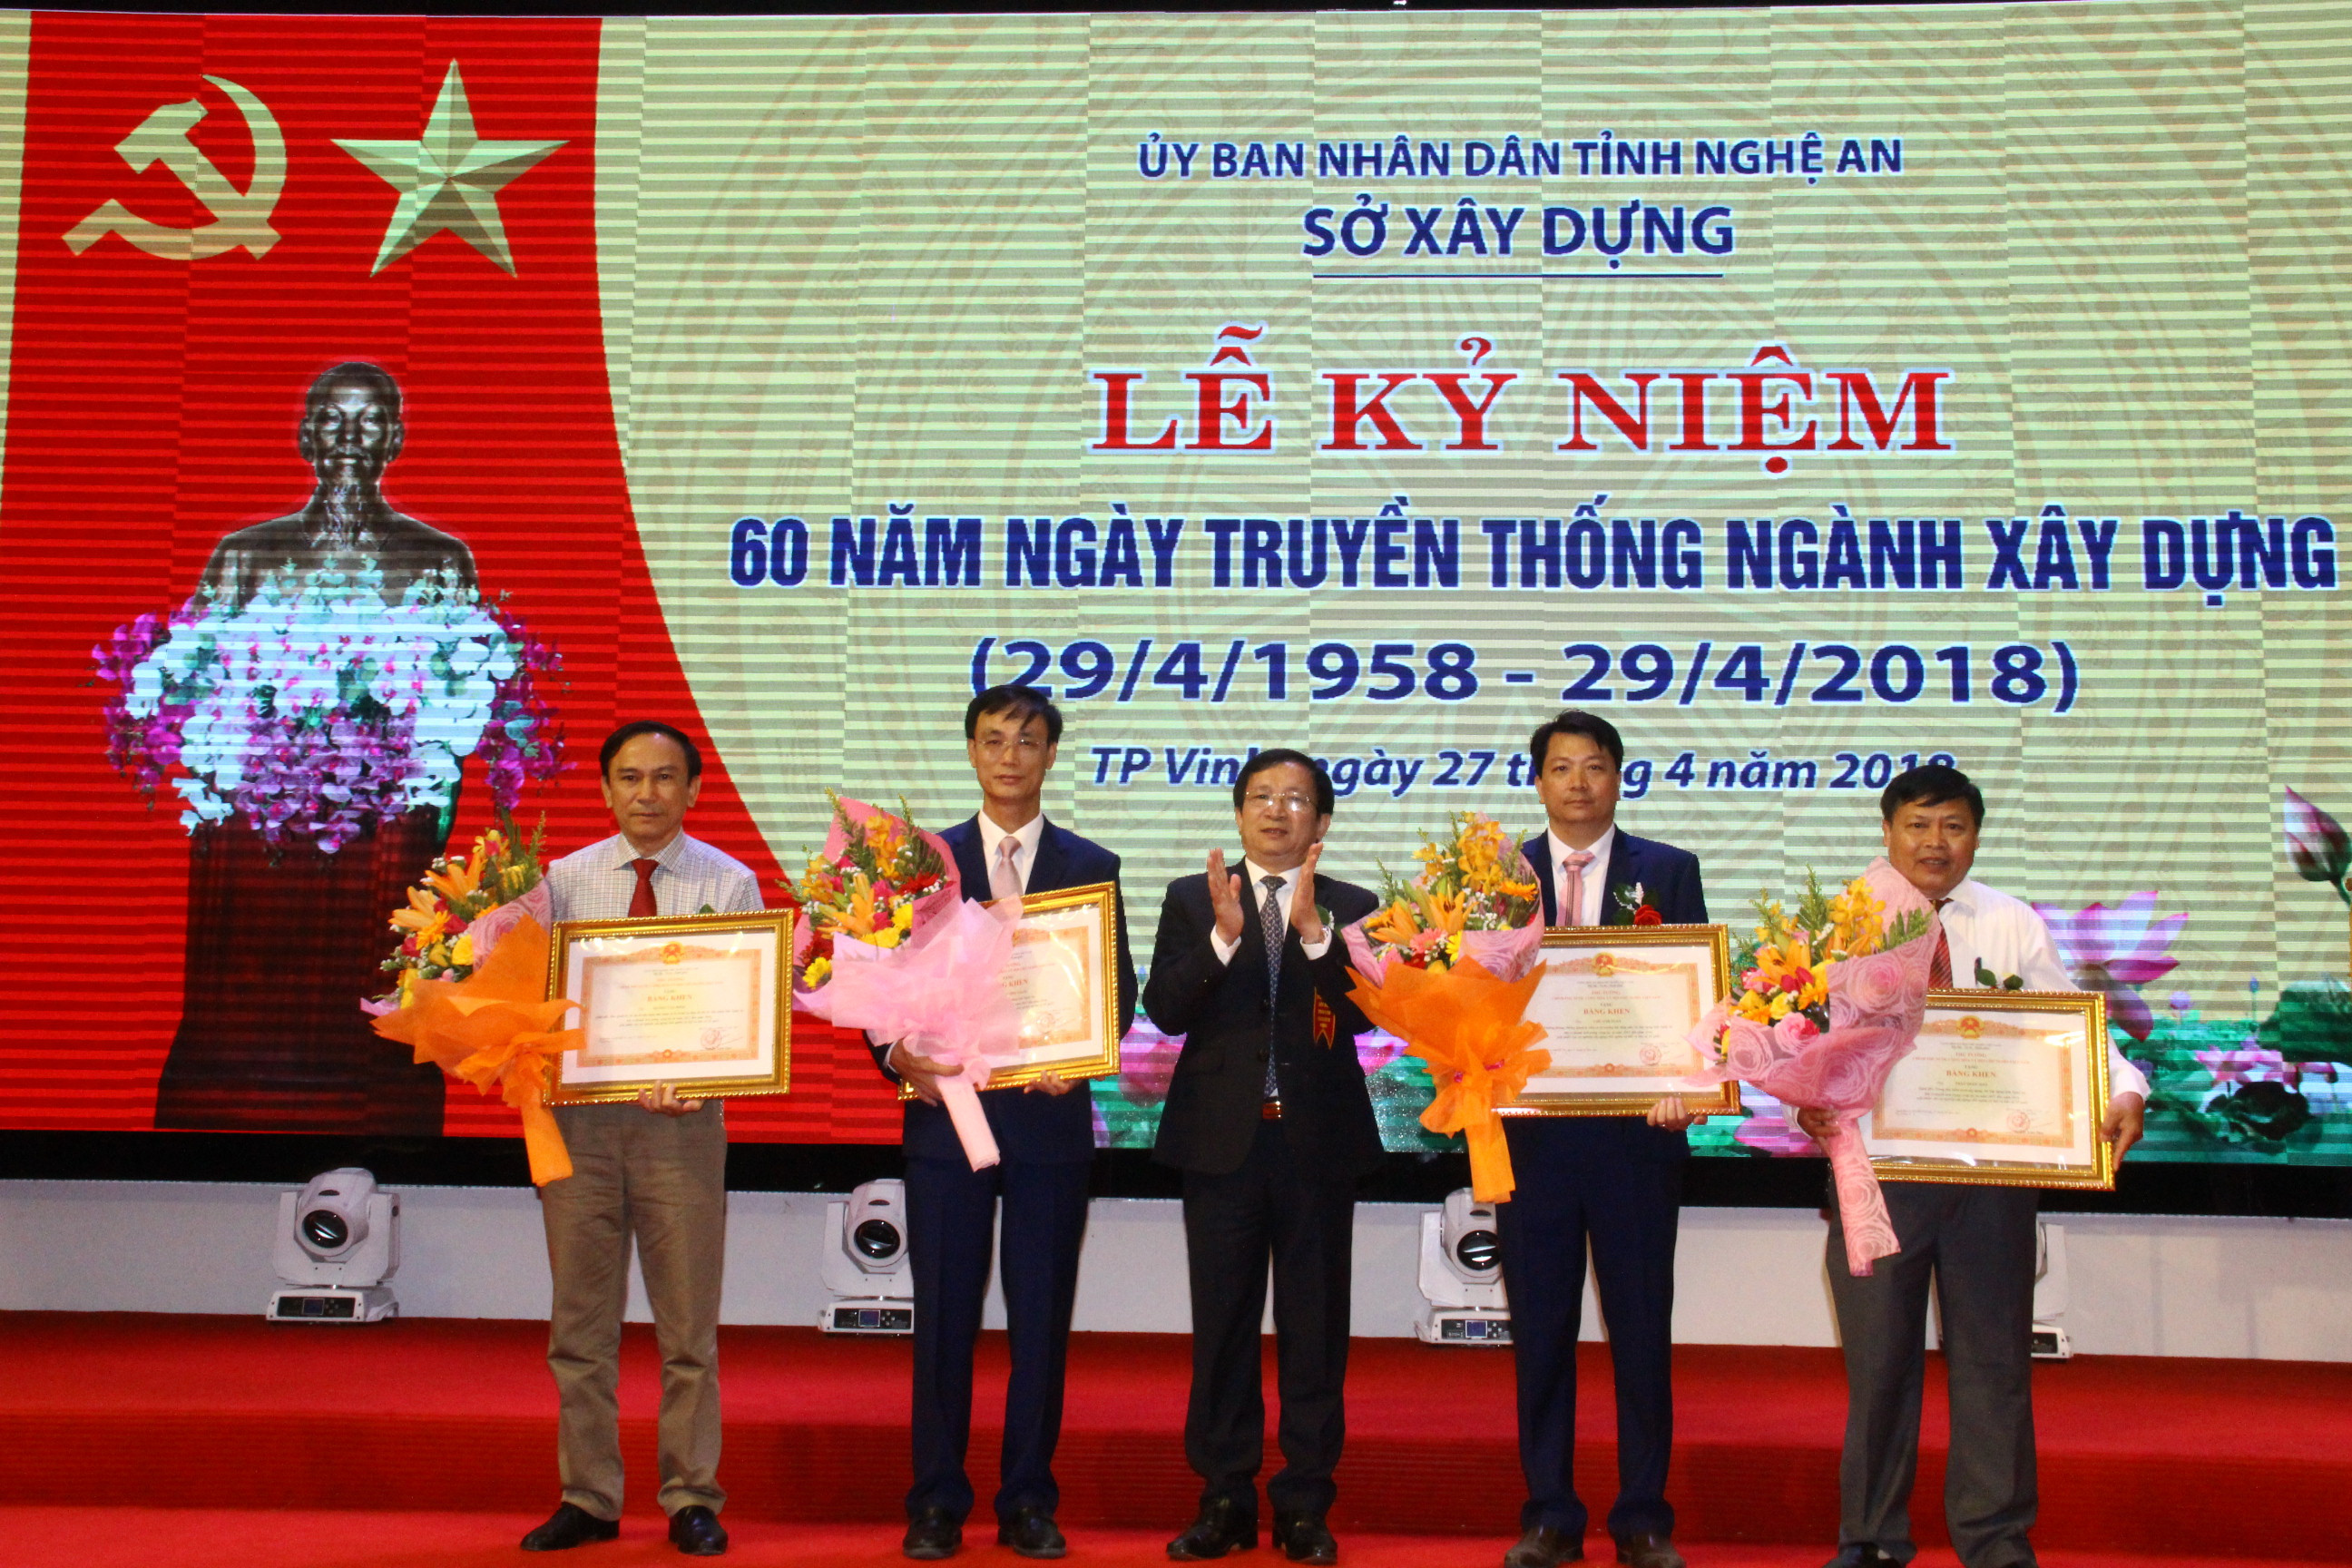 Được sự ủy quyền, đồng chí Nguyễn Viết Hồng - Phó chủ tịch UBND tỉnh trao Bằng khen của Chính phủ cho các nhân đạt thành tích xuất sắc. Ảnh: Hoàng Vĩnh.